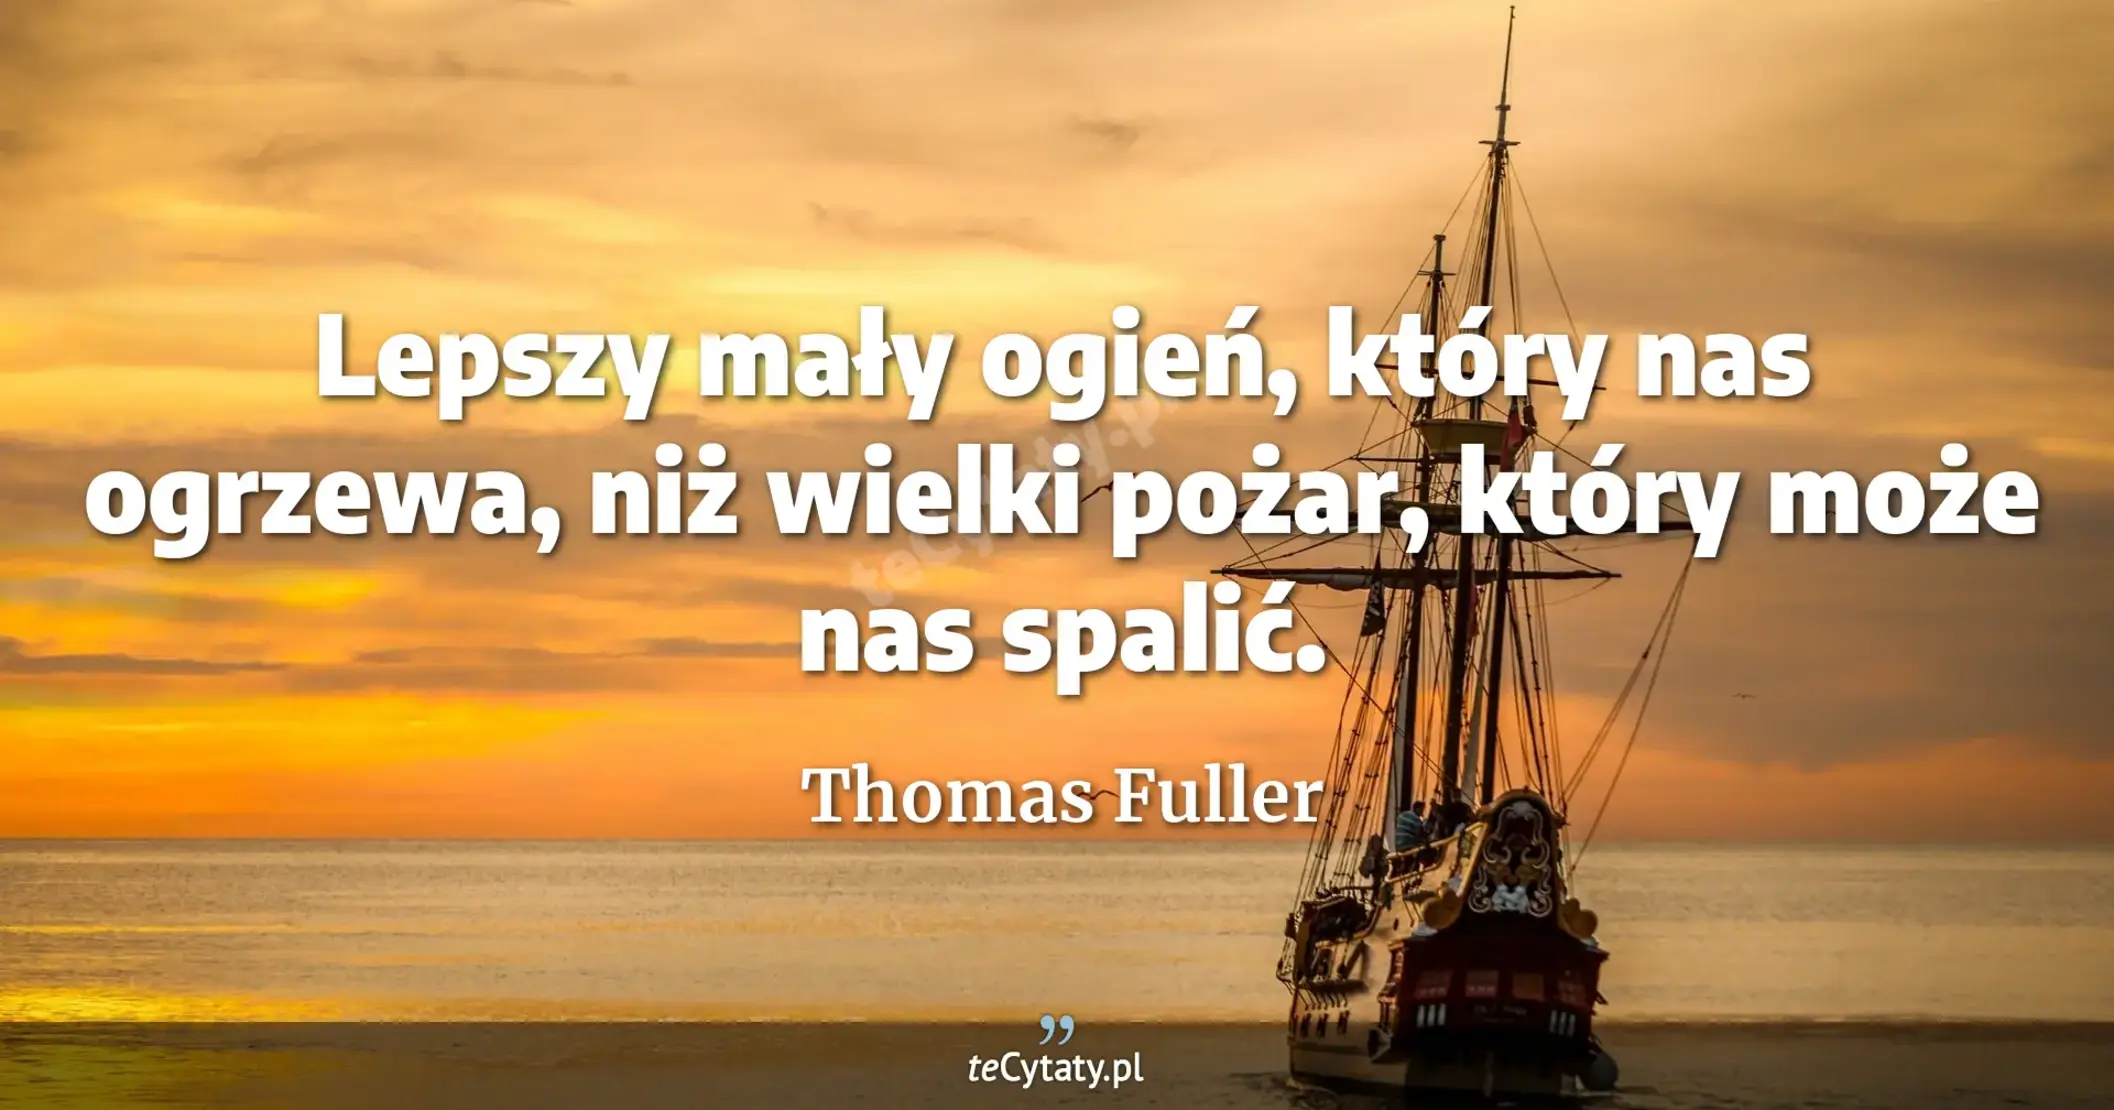 Lepszy mały ogień, który nas ogrzewa, niż wielki pożar, który może nas spalić. - Thomas Fuller